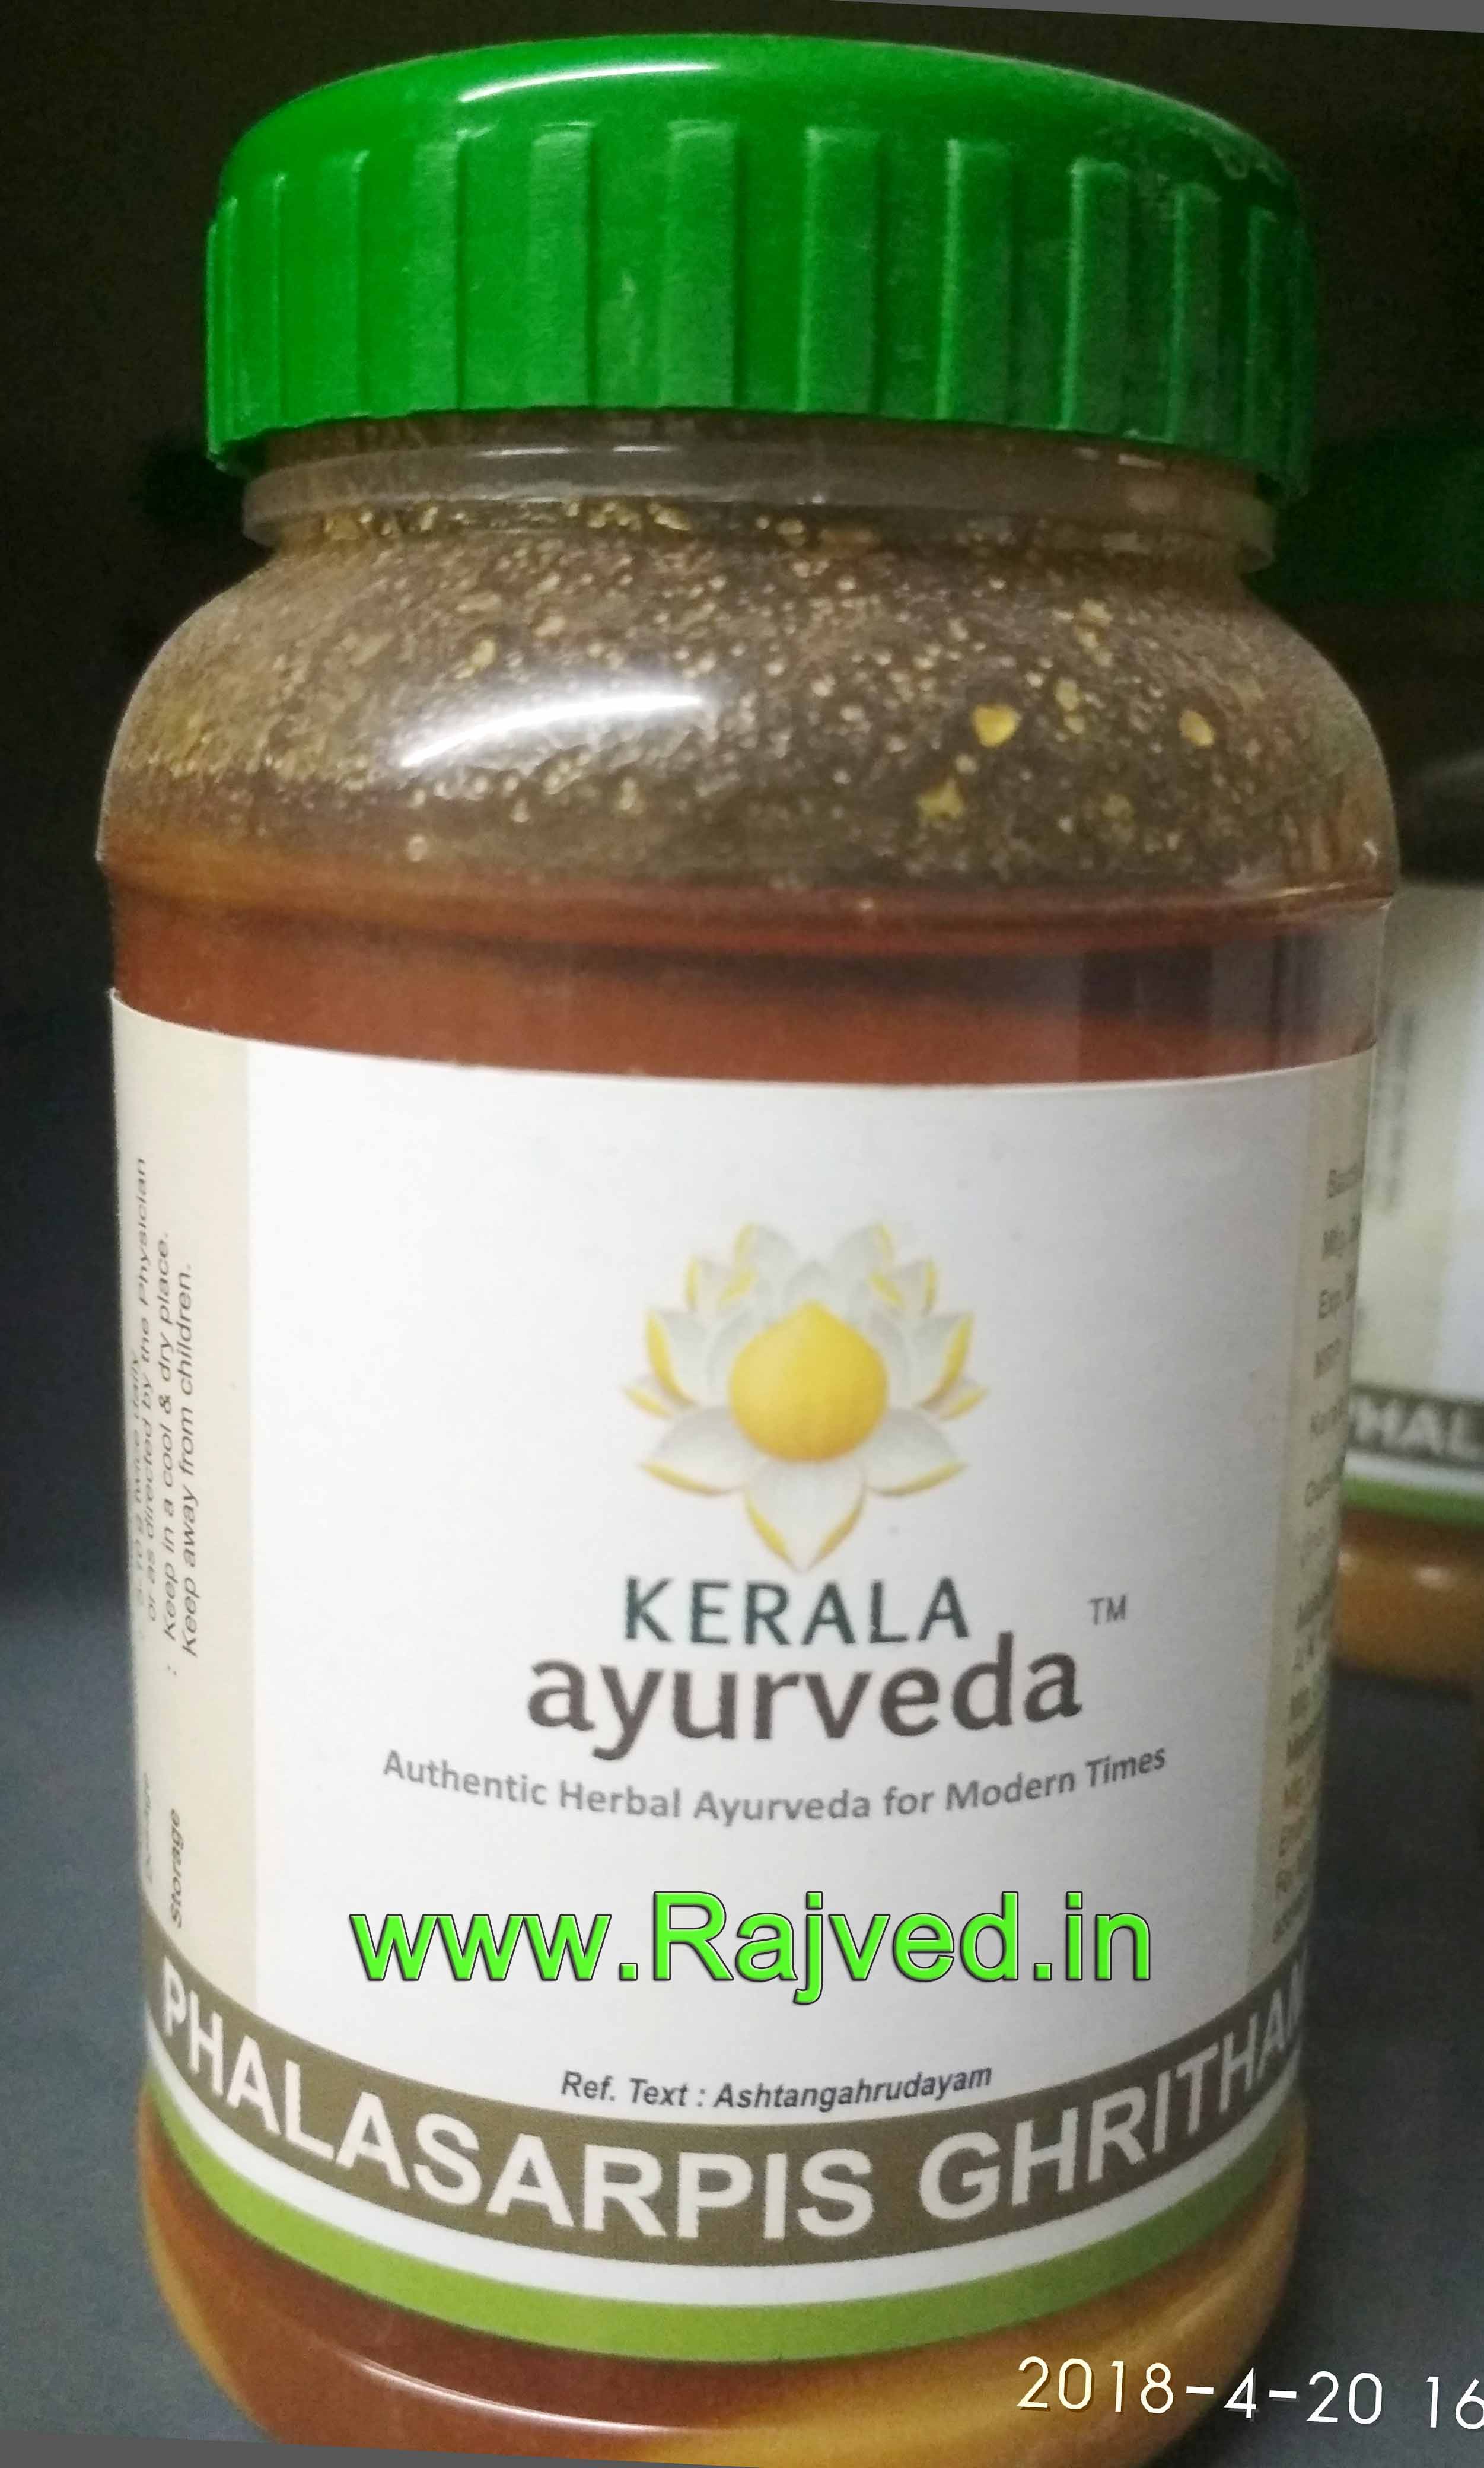 phalasarpis ghritham 150 ml kerala ayurveda Ltd